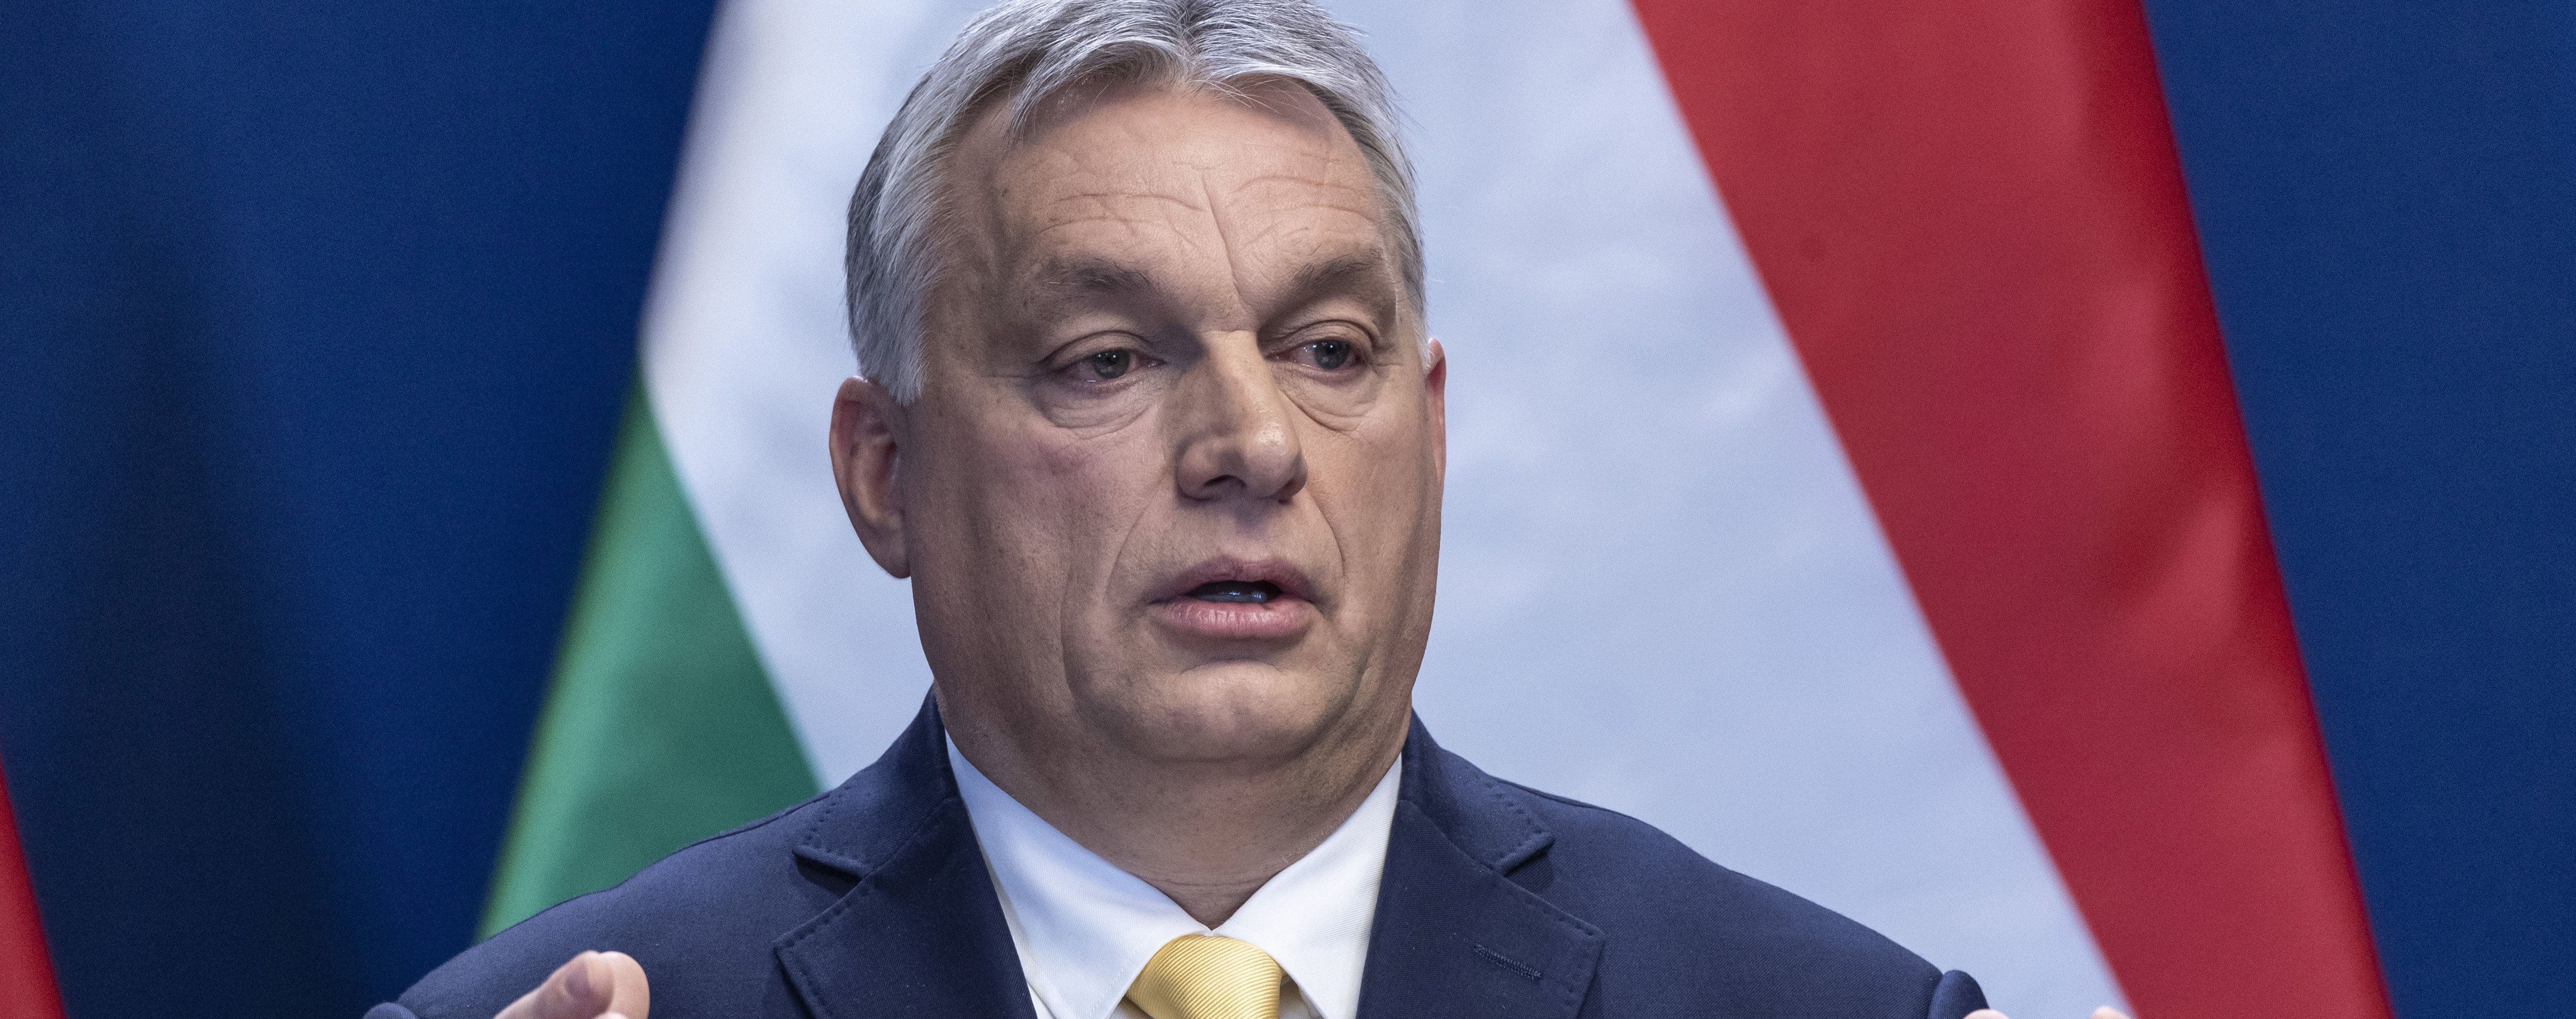 Орбан назвал Украиной "коррумпированной страной" и выступил против ее вступления в ЕС